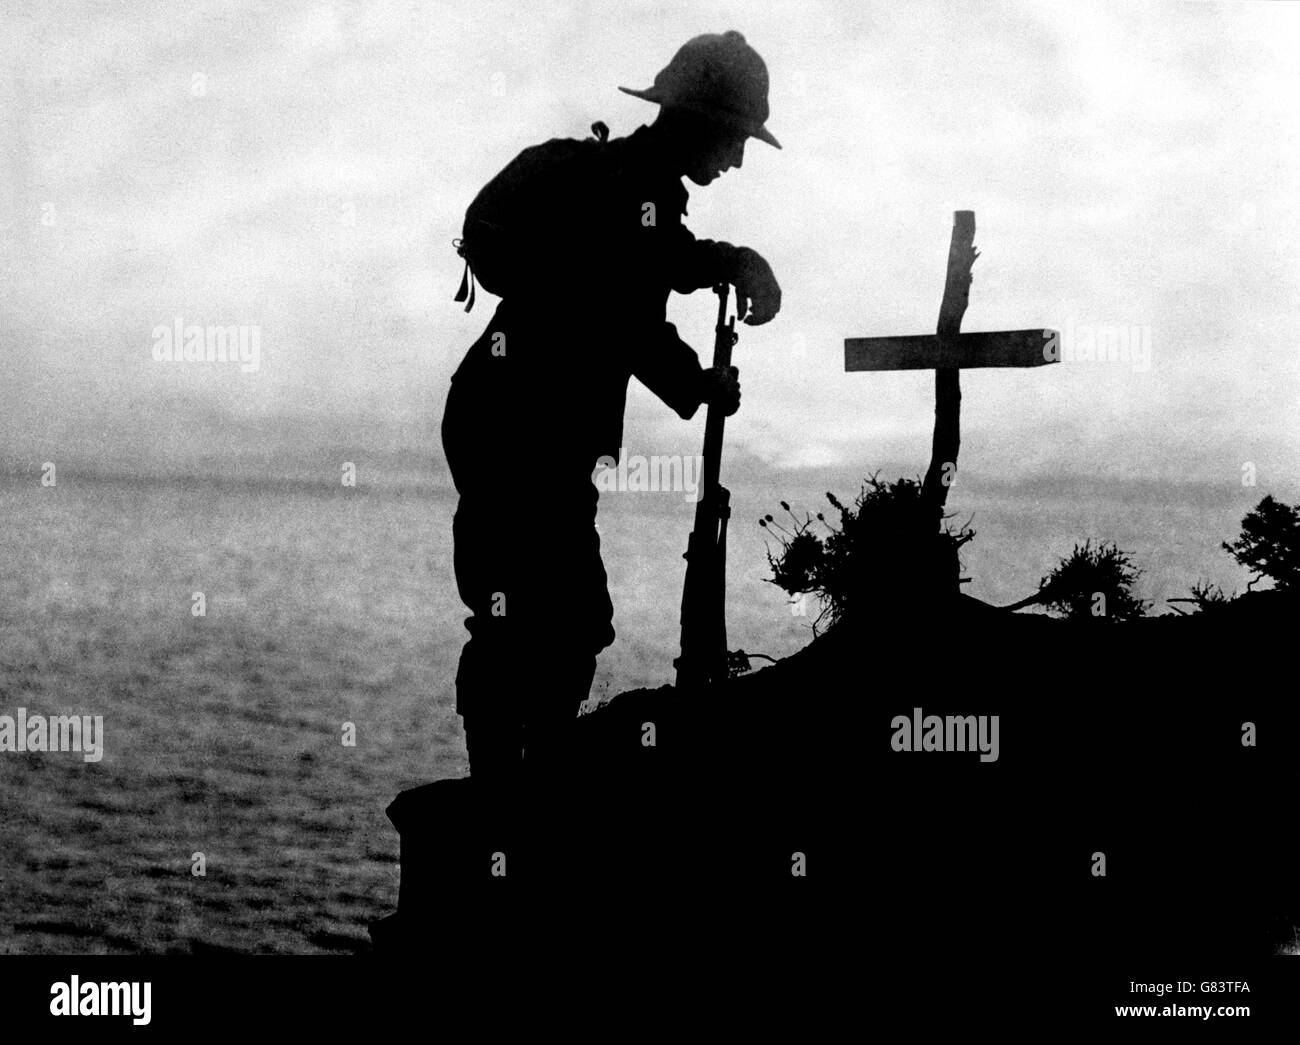 Ein britischer Soldat zollt am Grab eines Kollegen in der Nähe von Kap Helles, wo die Landungen in Gallipoli stattfanden, seinen Respekt. Stockfoto